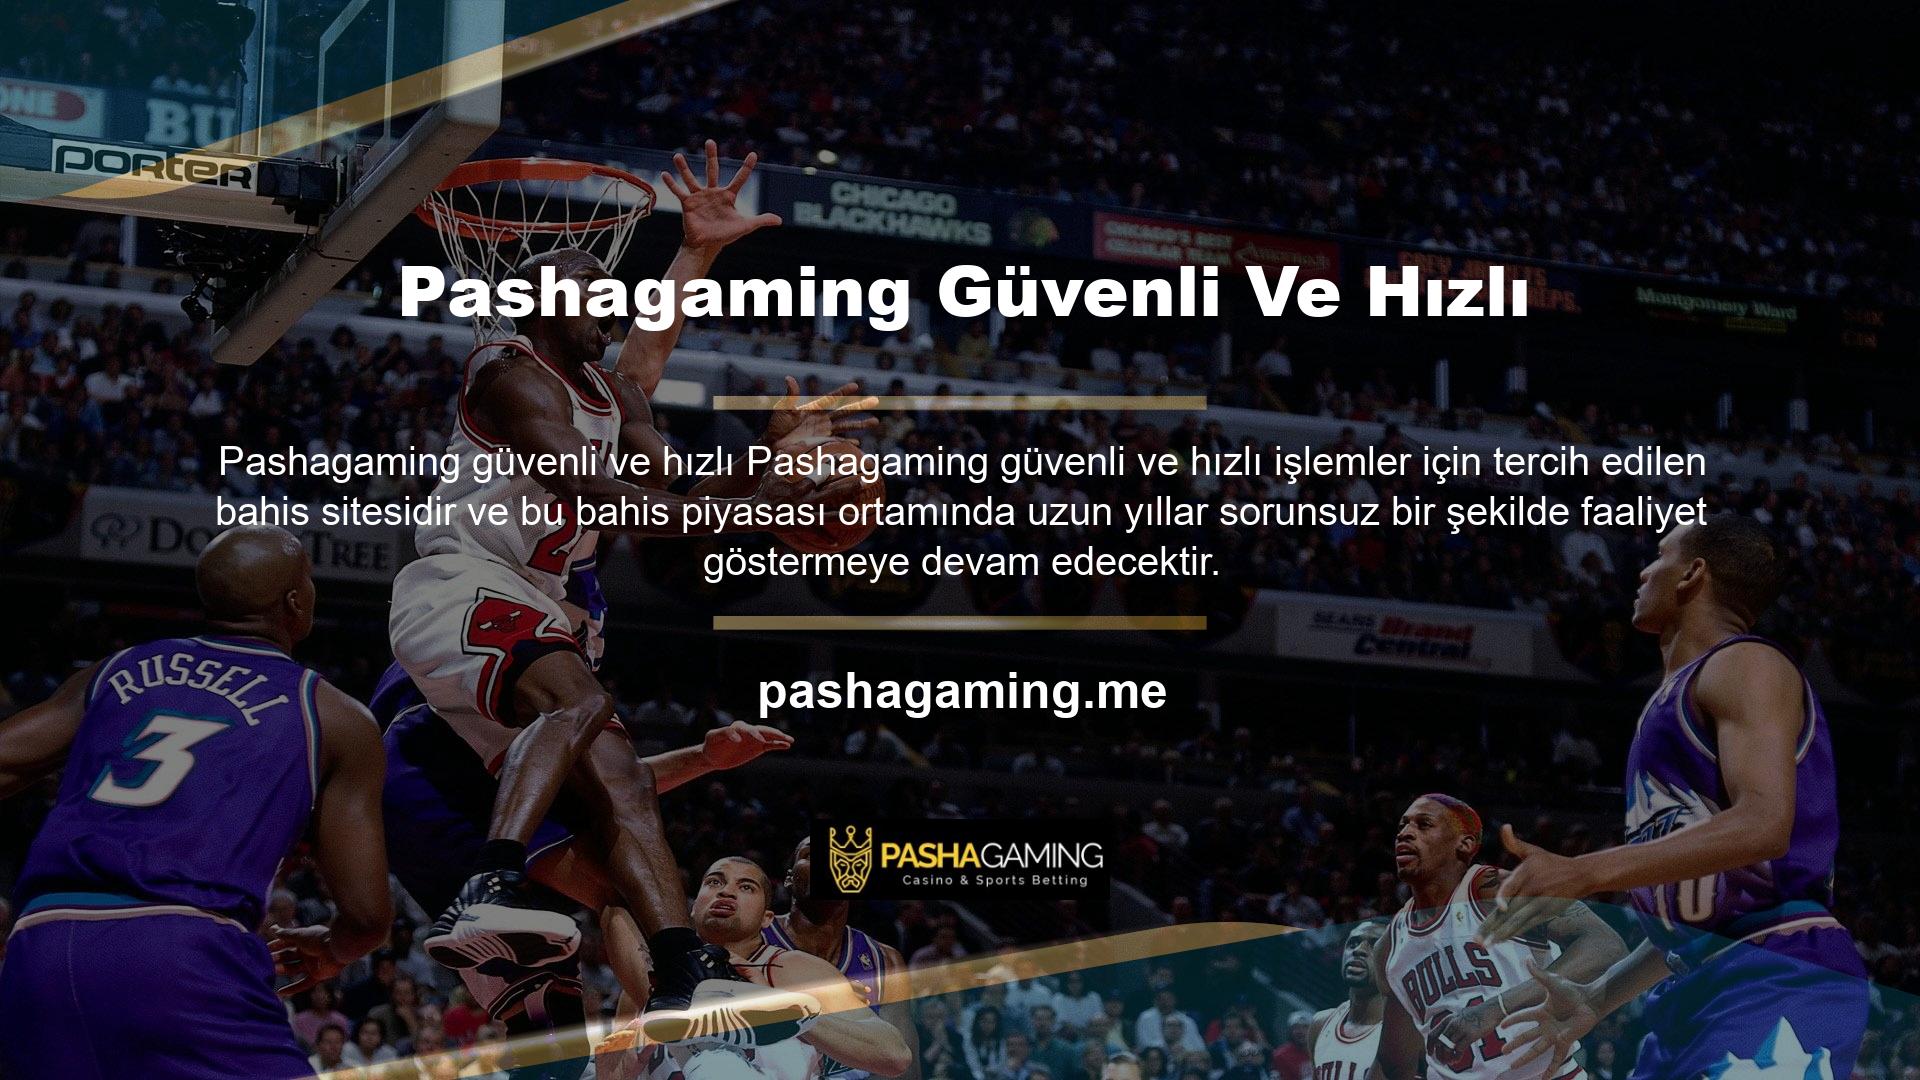 Pashagaming, müşterilerine sanal casino, casino, slot makineleri veya spor bahislerinin keyfini çıkarma fırsatı sunuyor ve 7-24 hizmet felsefesi aracılığıyla verimli canlı destek sağlamaya kararlıdır